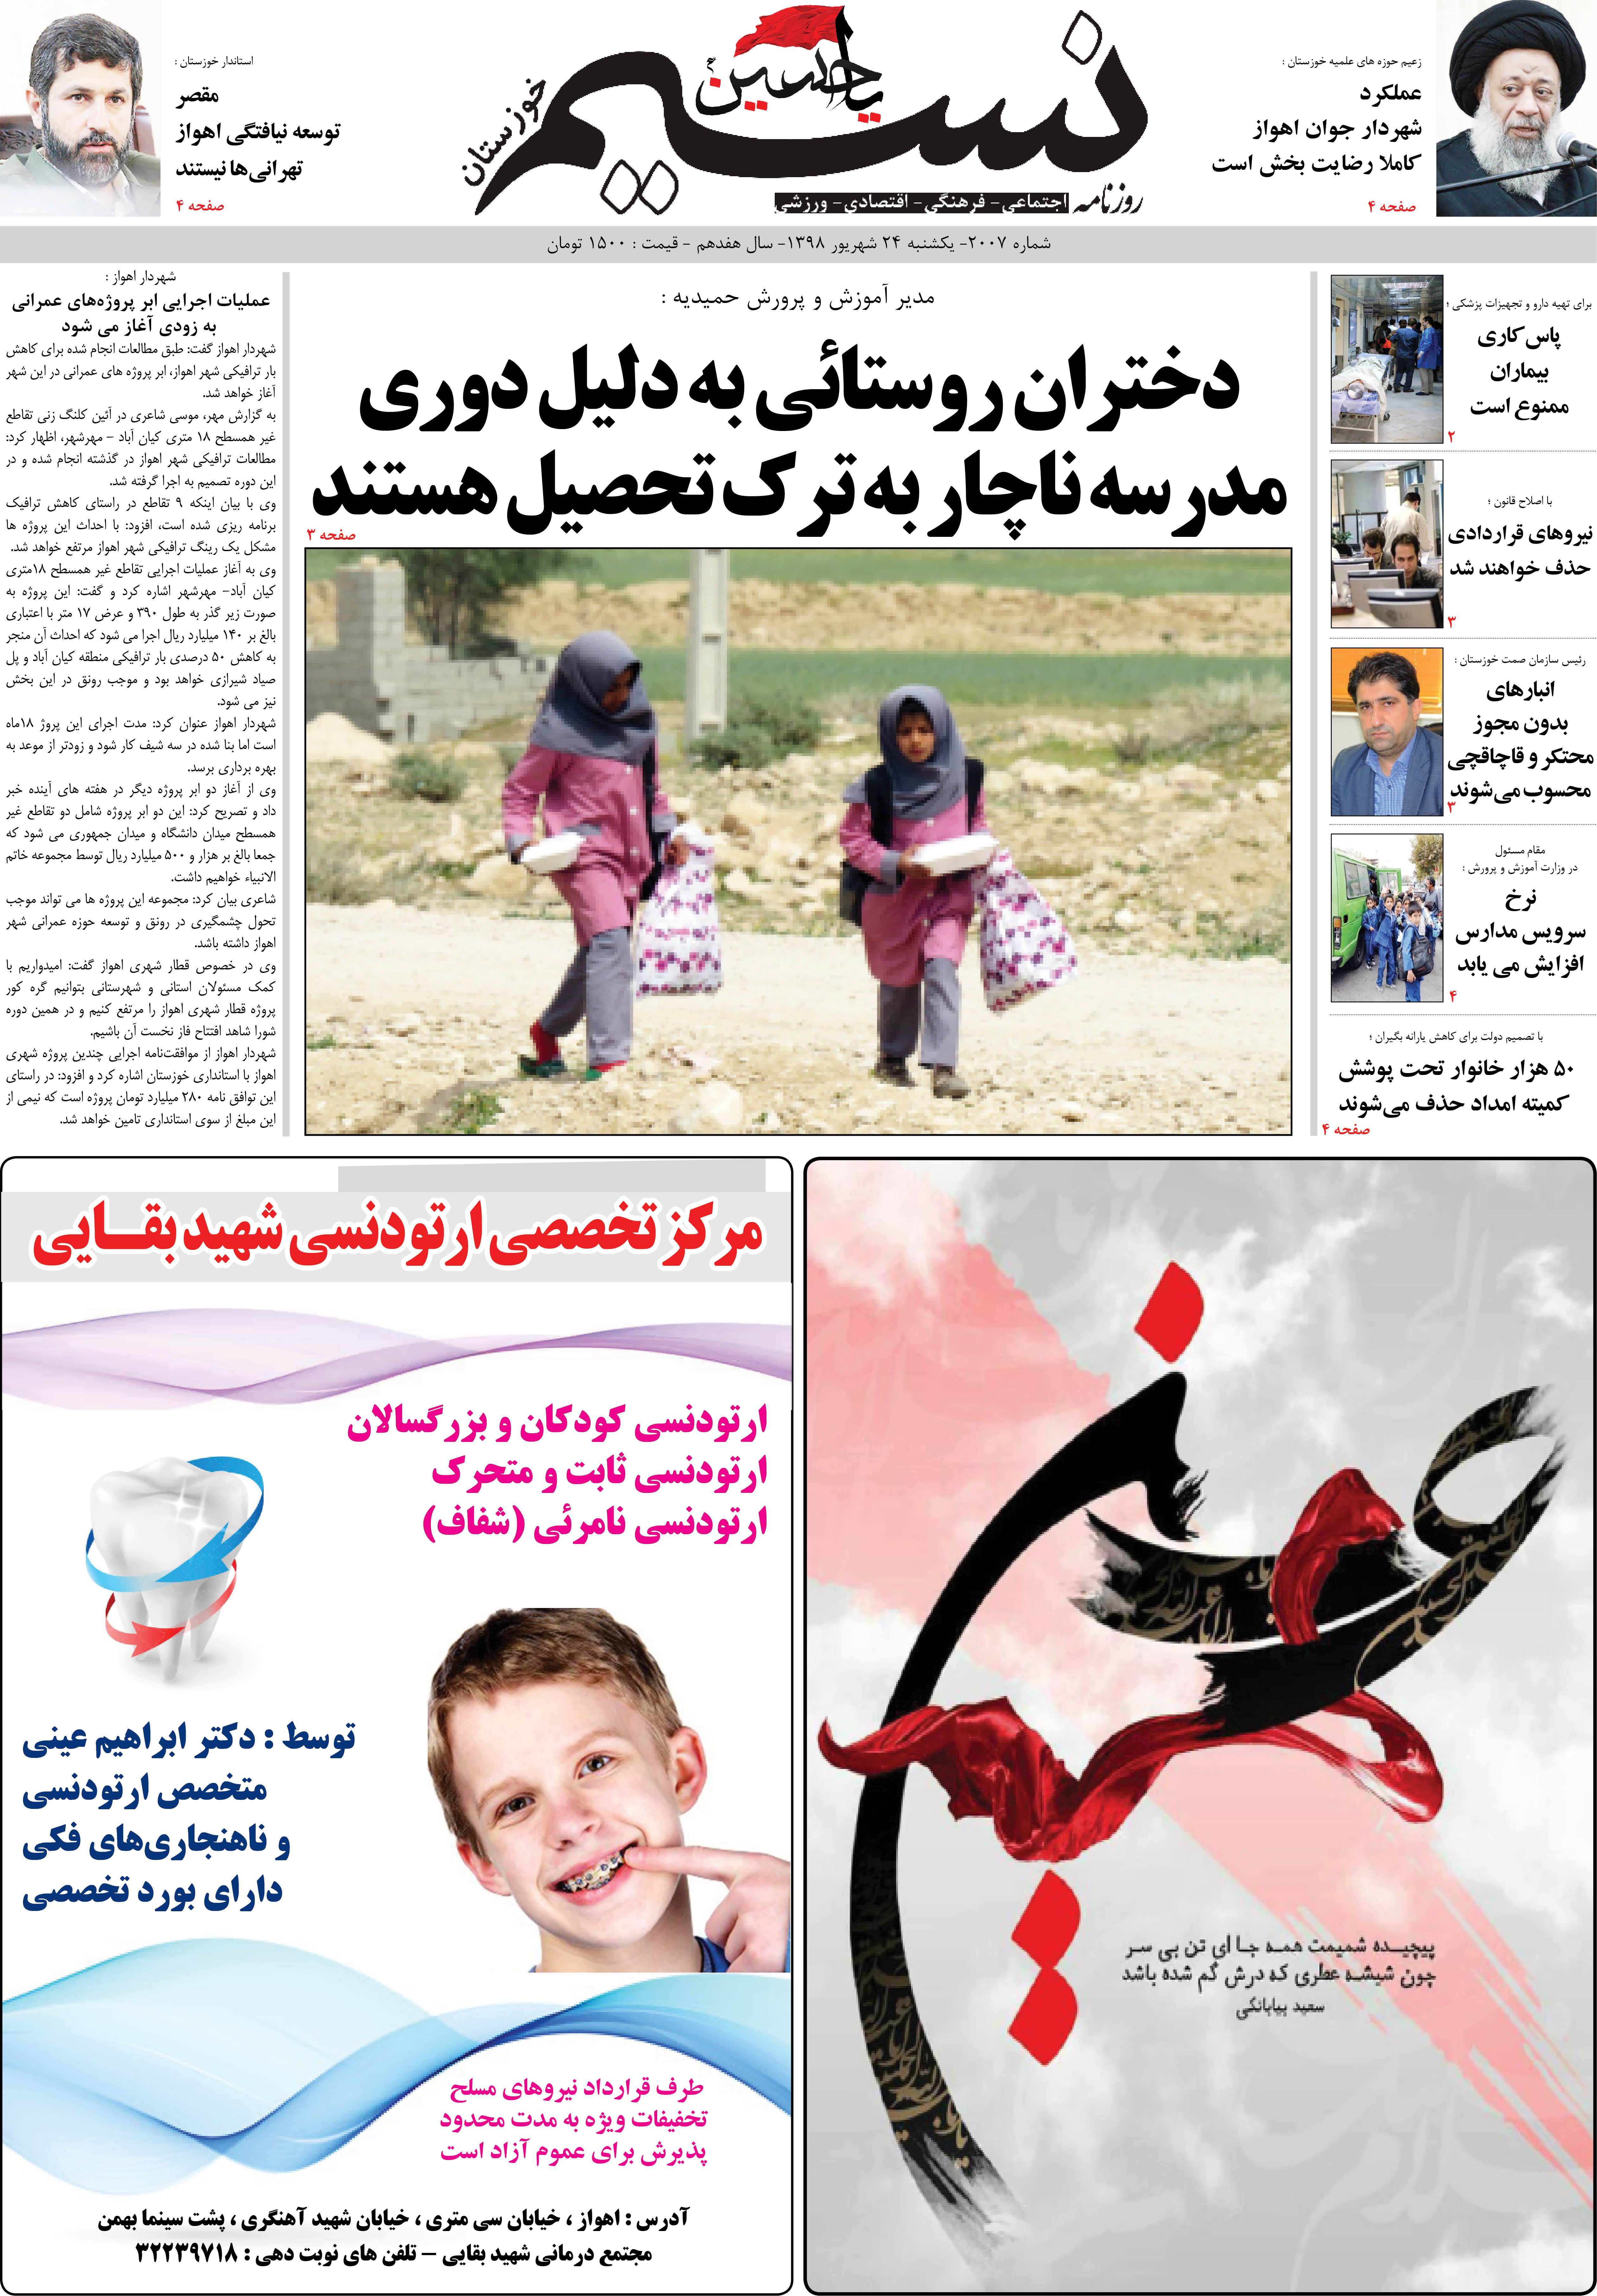 صفحه اصلی روزنامه نسیم شماره 2007 